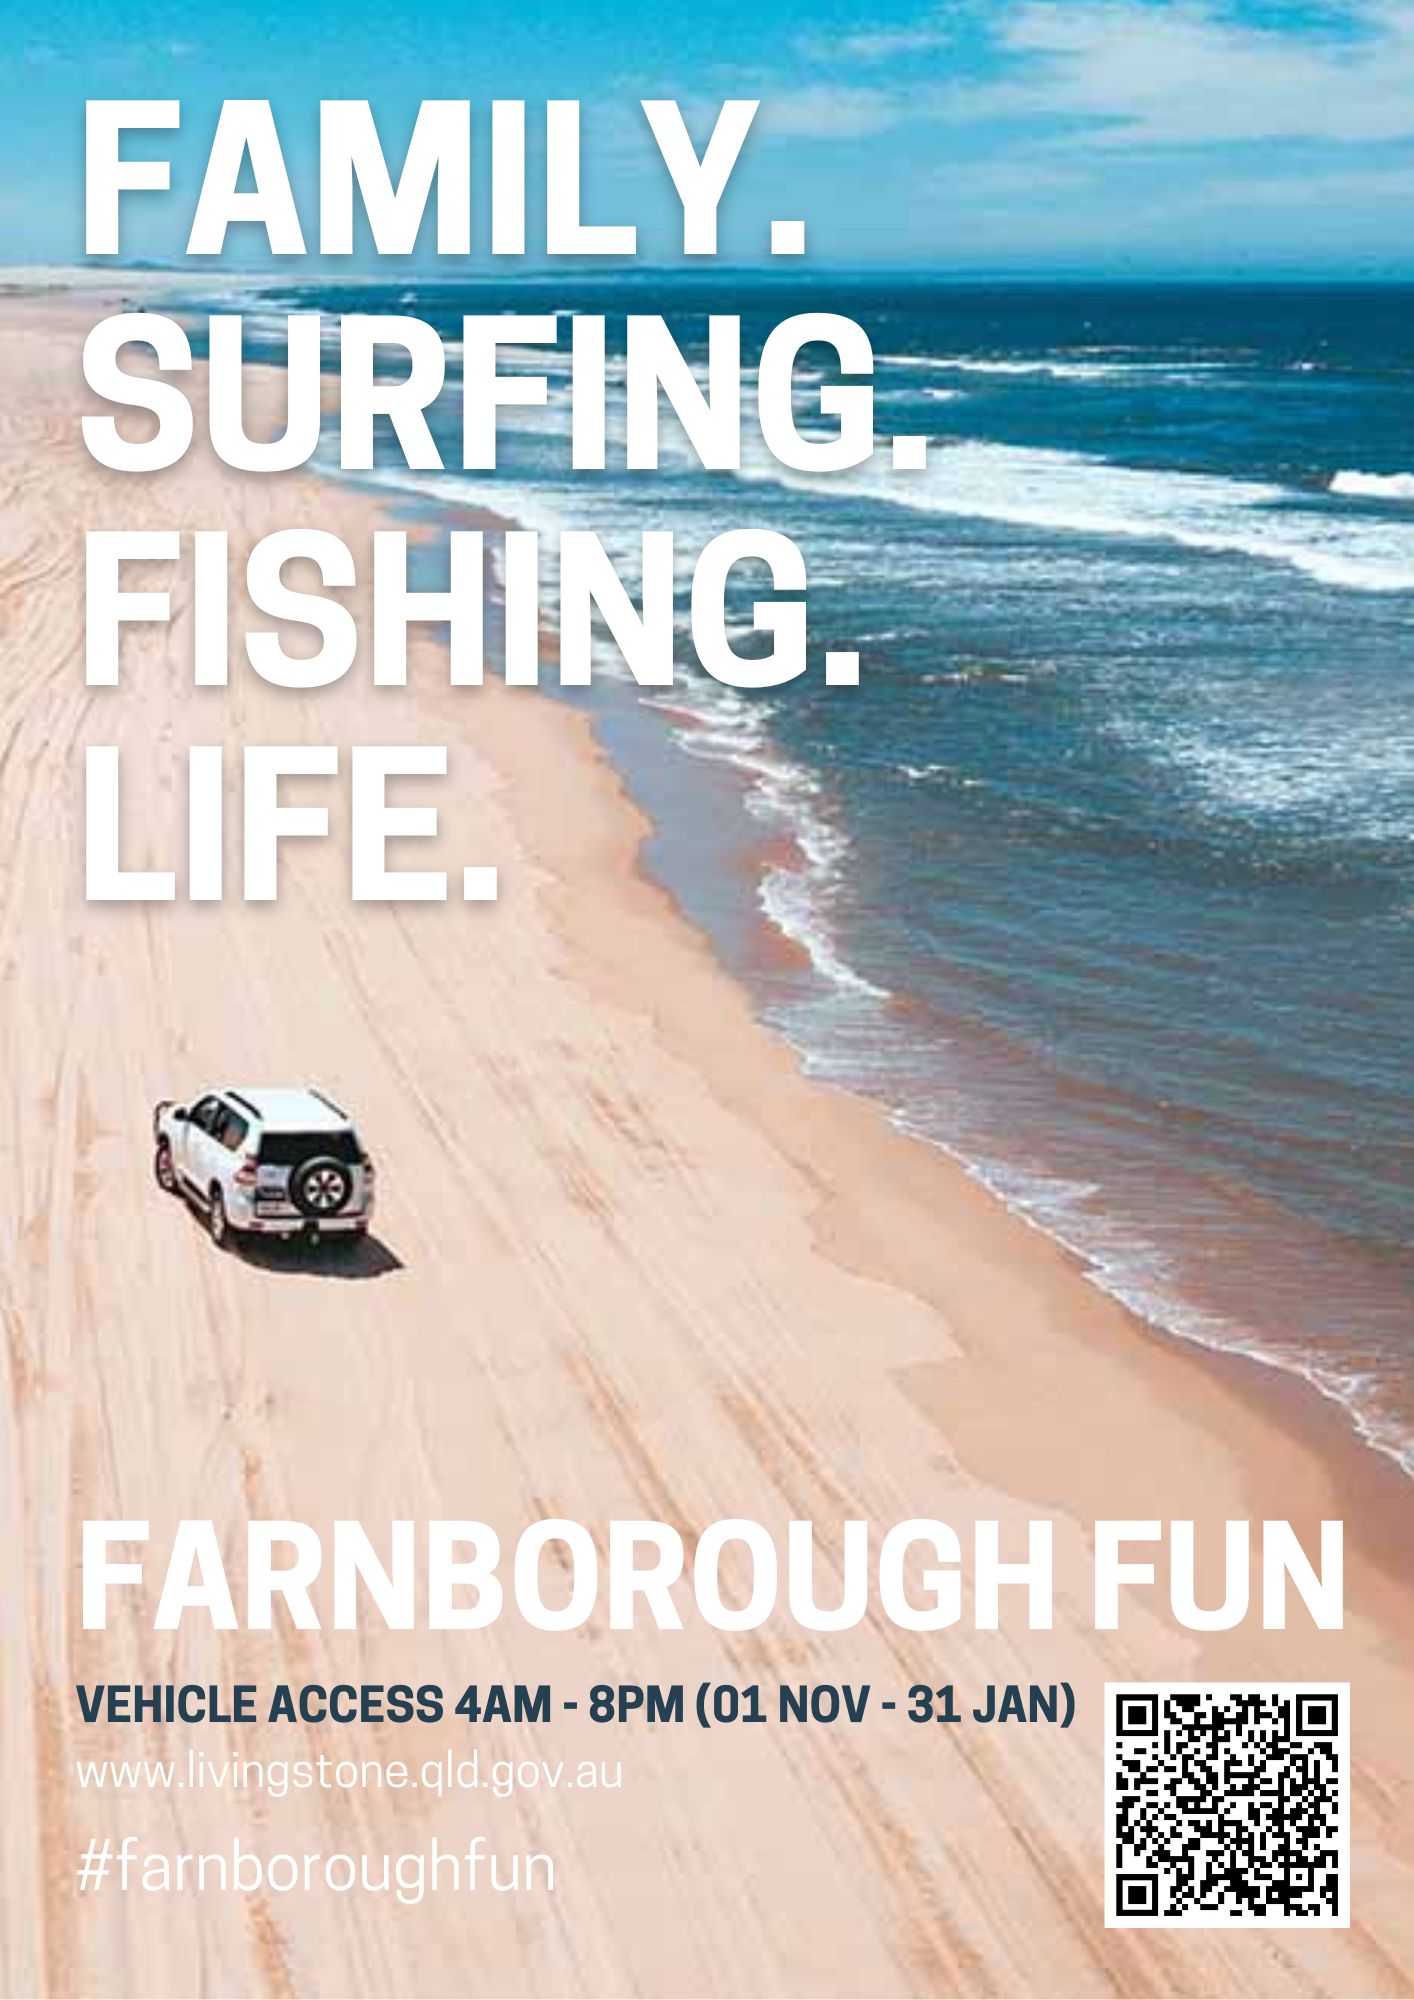 #Farnboroughfun